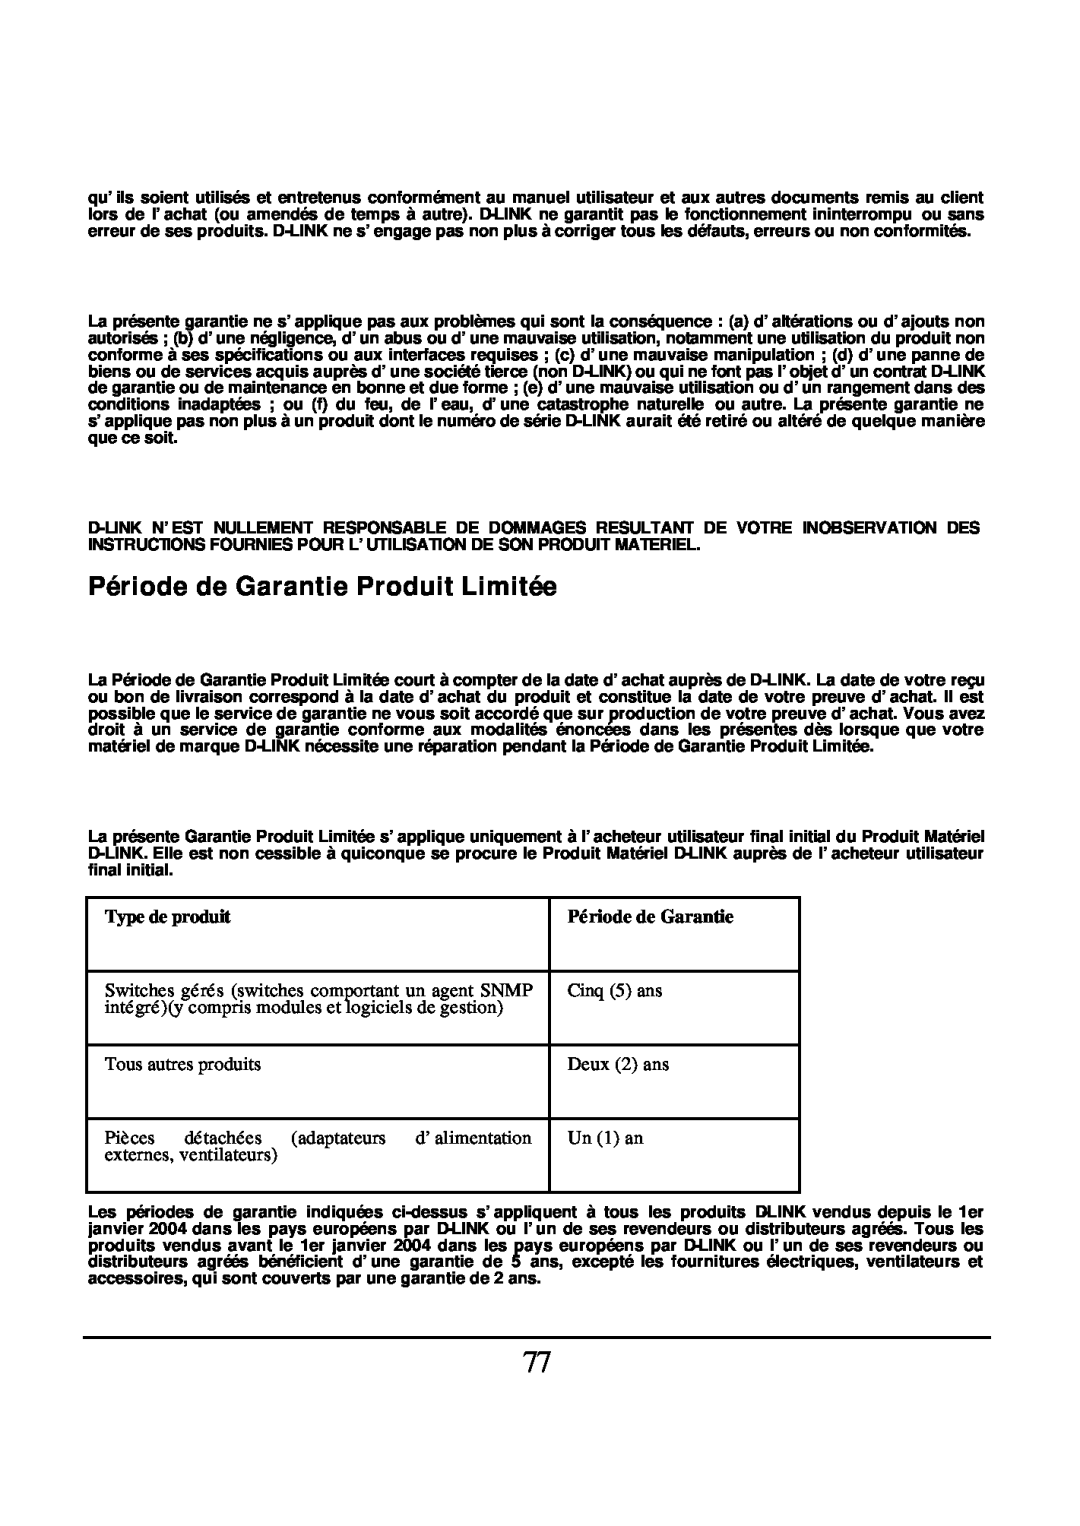 D-Link DES-1526 manual Période de Garantie Produit Limitée, Type de produit 